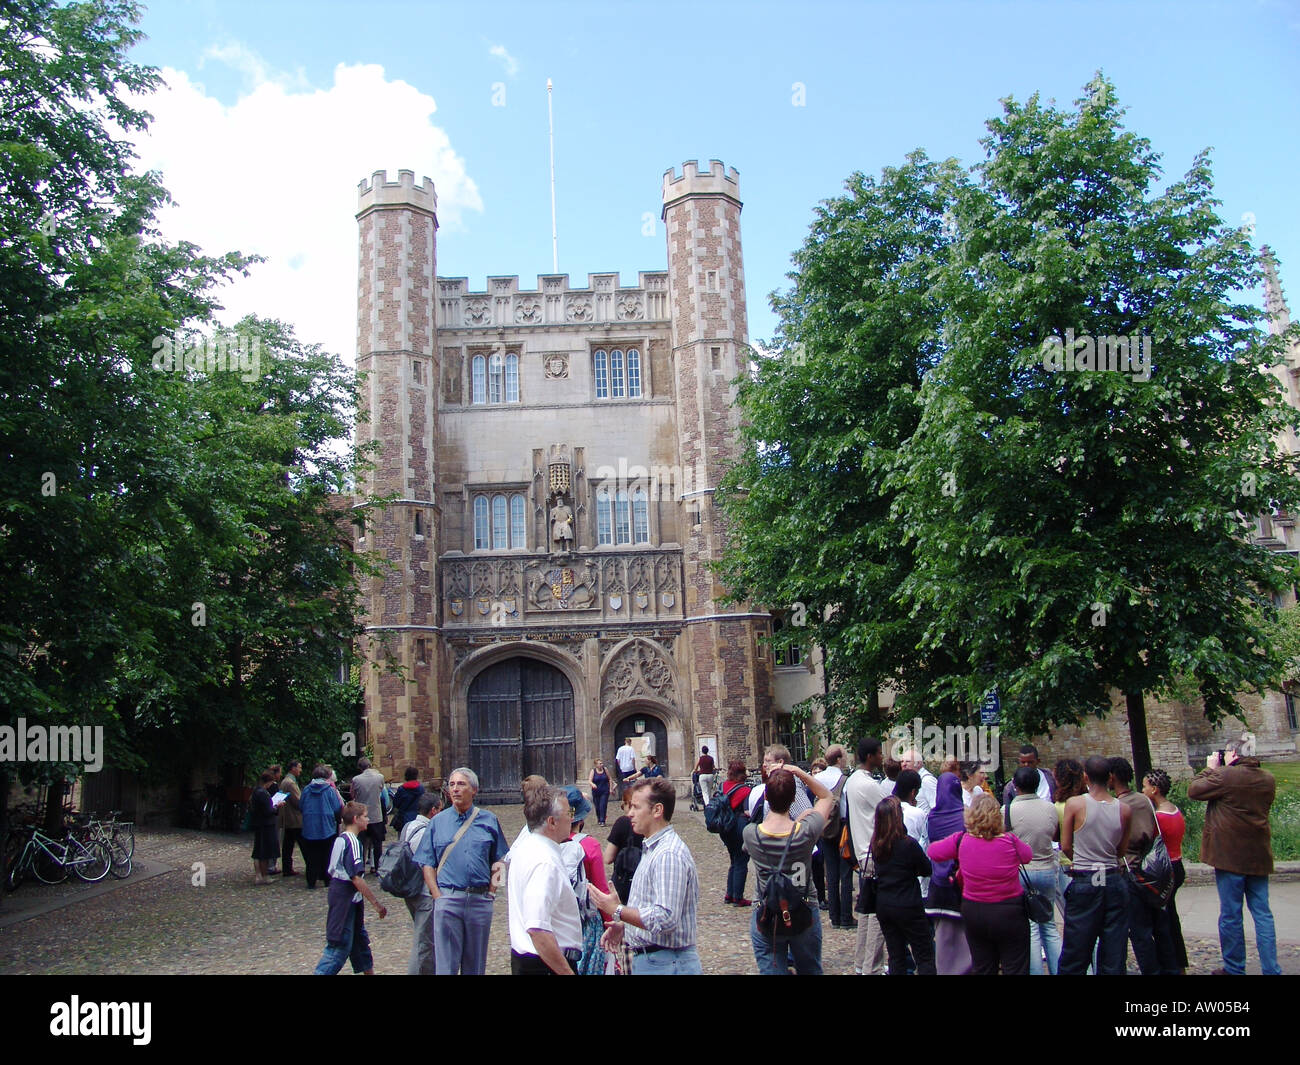 Trinity College Cambridge University Stock Photo